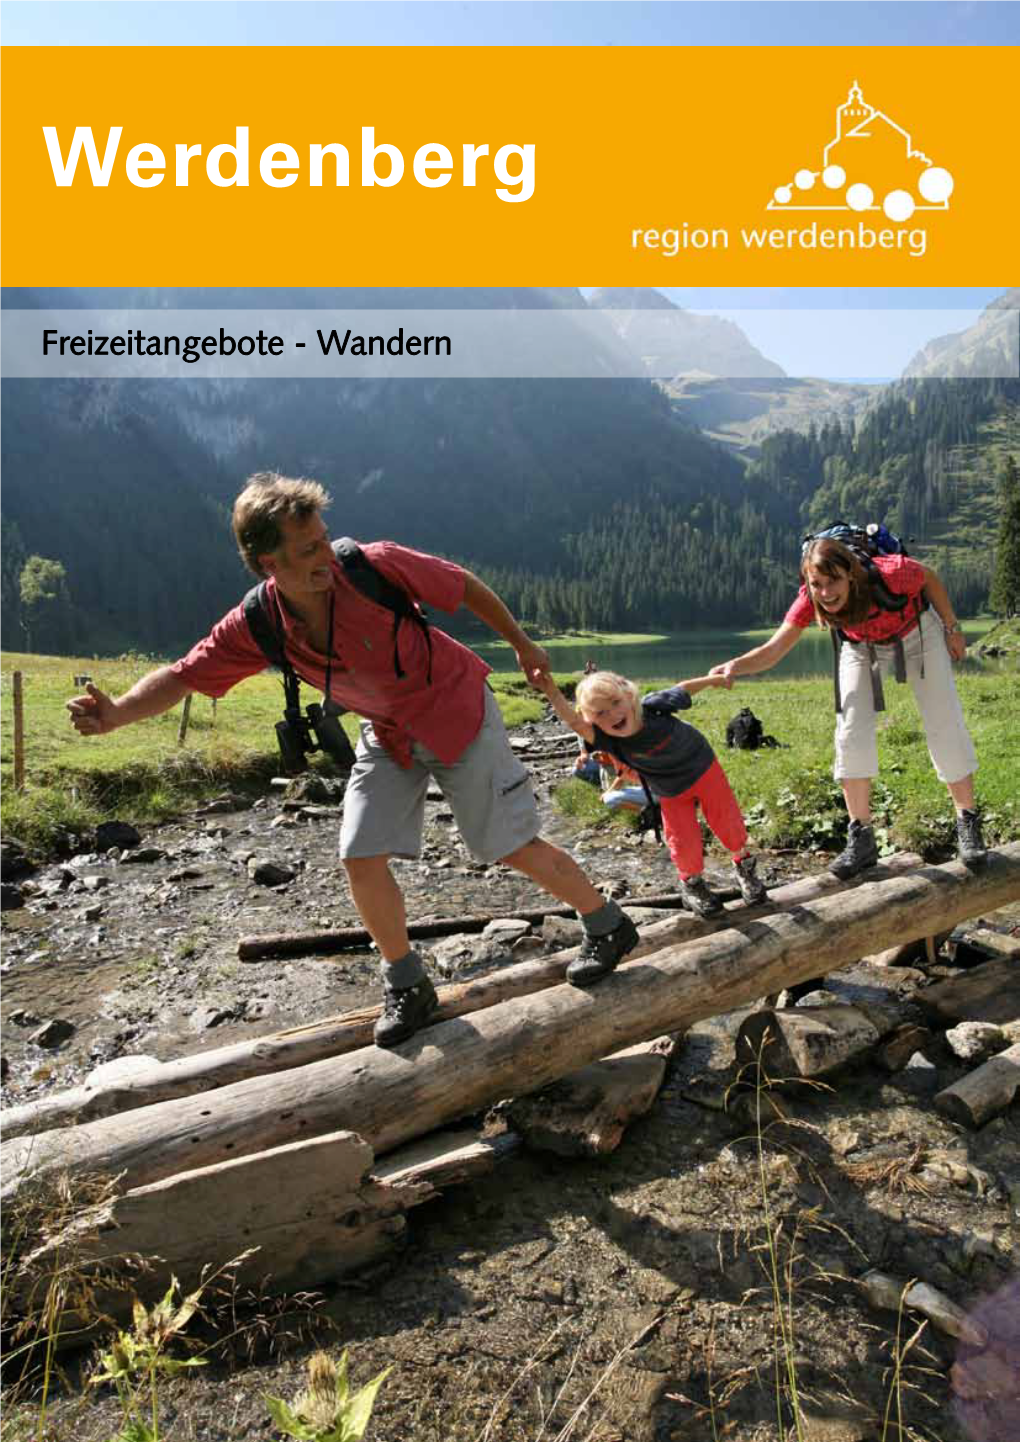 Freizeitangebot Wandern Werdenberg